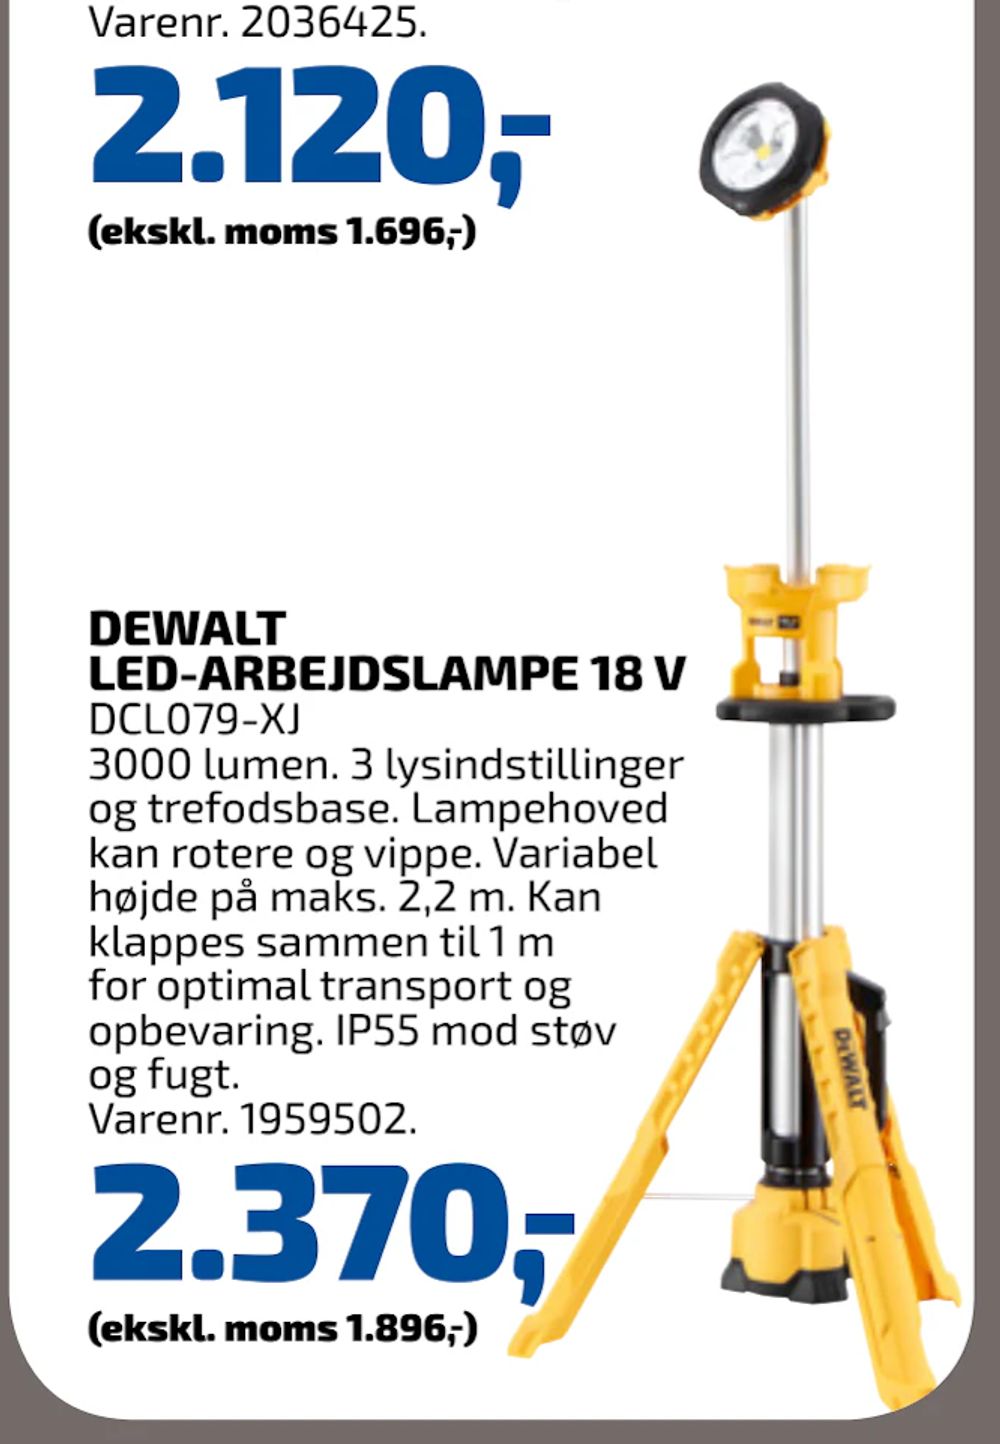 Tilbud på DEWALT LED-ARBEJDSLAMPE 18 V fra Davidsen til 2.370 kr.